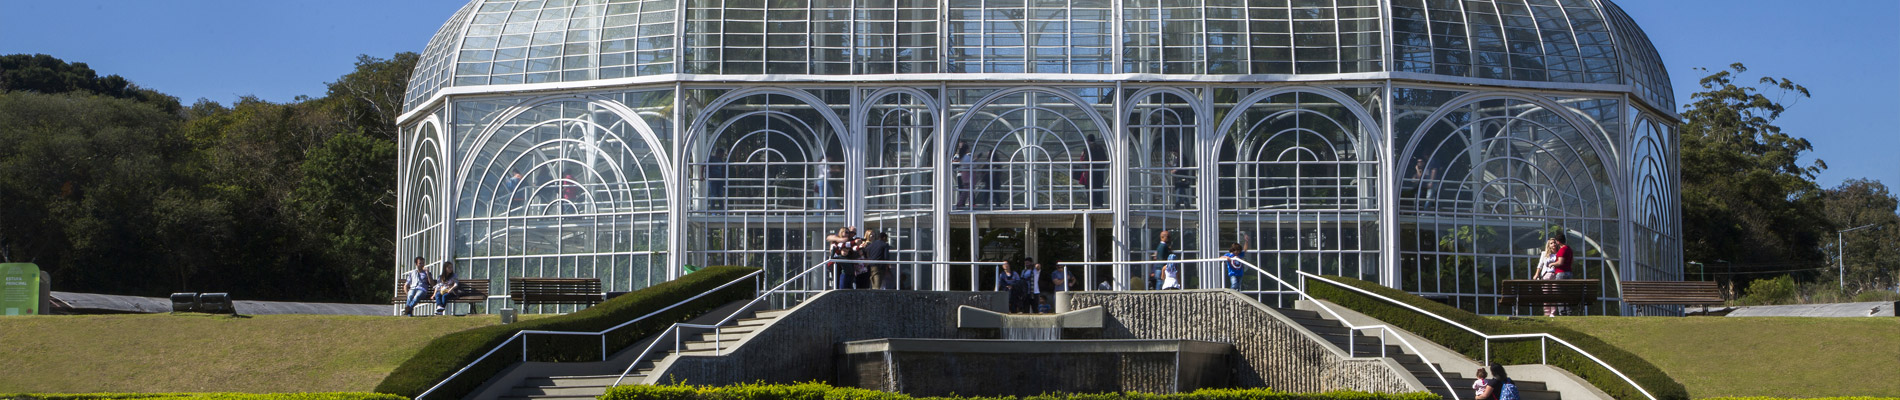 Entrada do Jardim Botânico, estrutura de vidro com escadas e árvores ao fundo